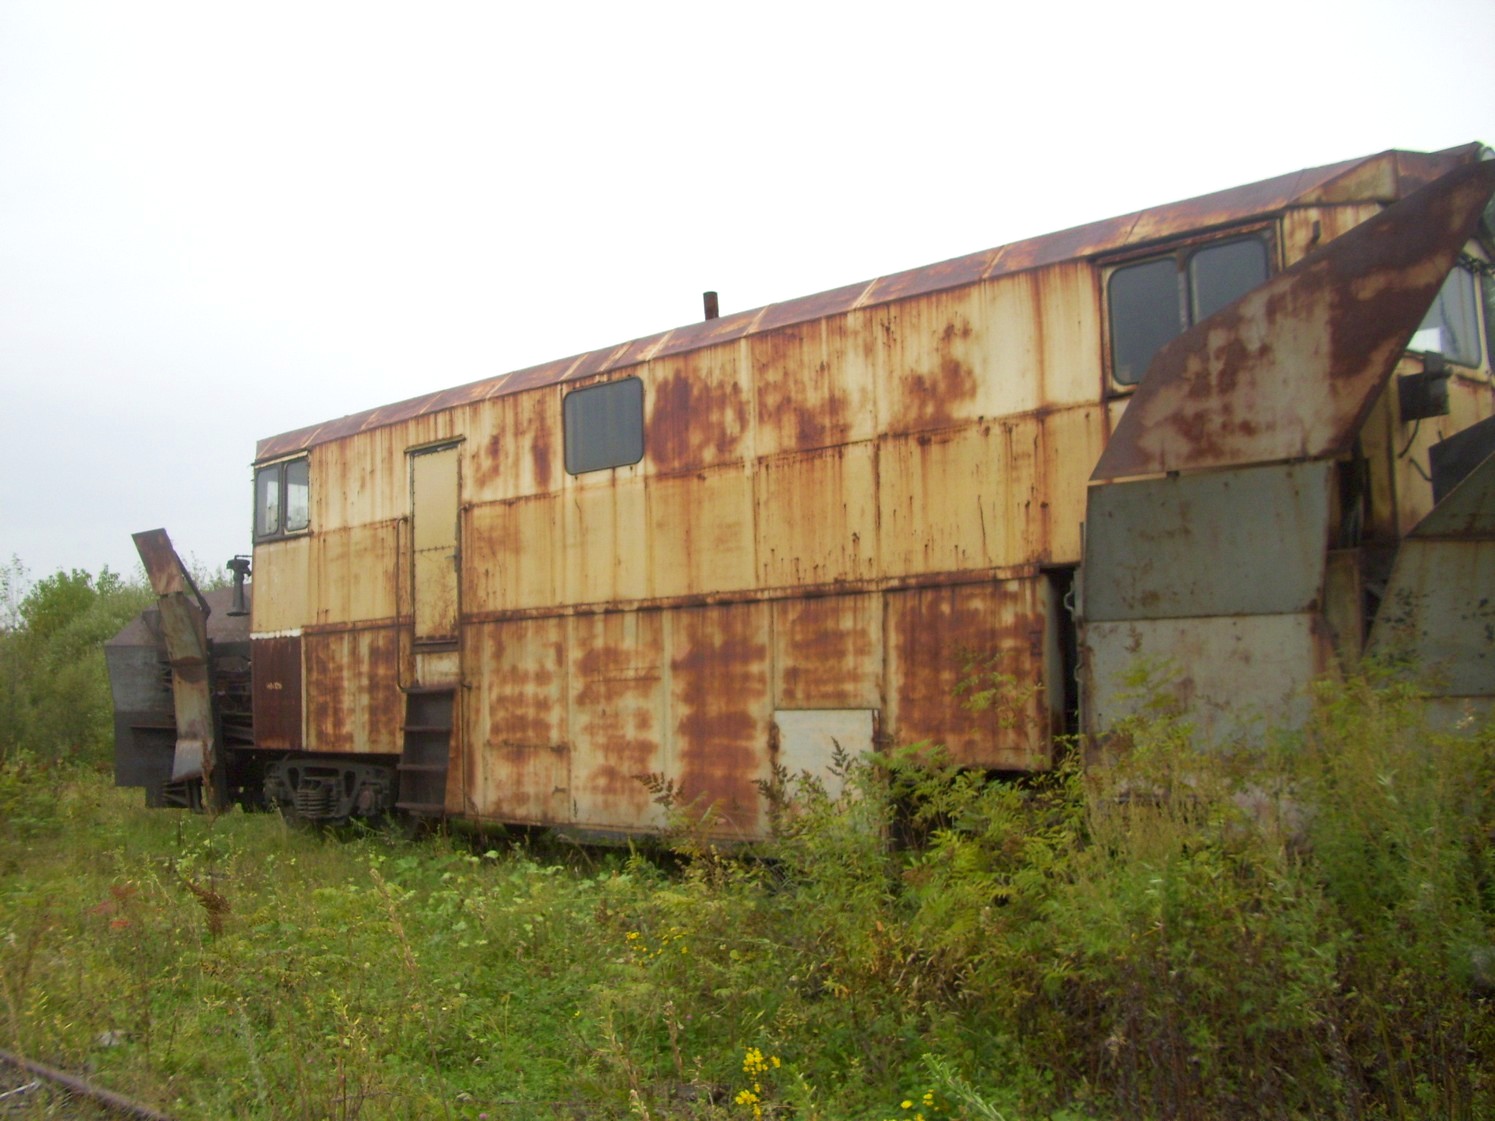 Оборская железная дорога — фотографии, сделанные в 2009 году (часть 4)